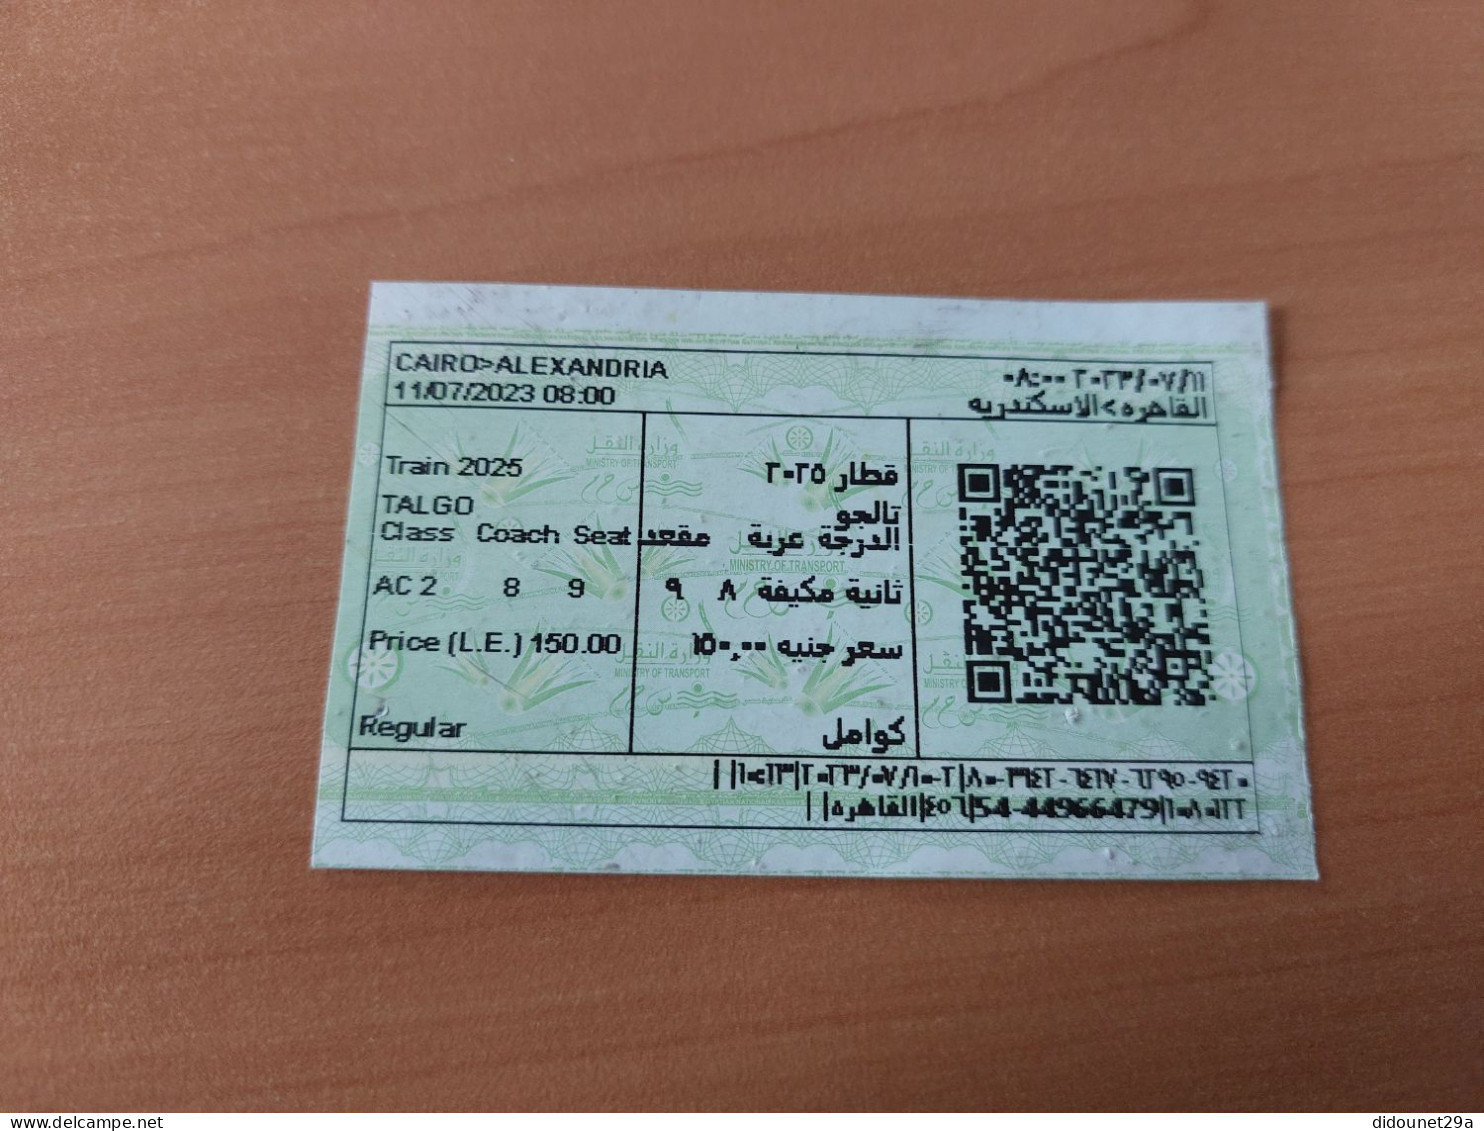 Ticket De Transport (train) "CAIRO - ALEXANDRIA" Egypte - Mundo